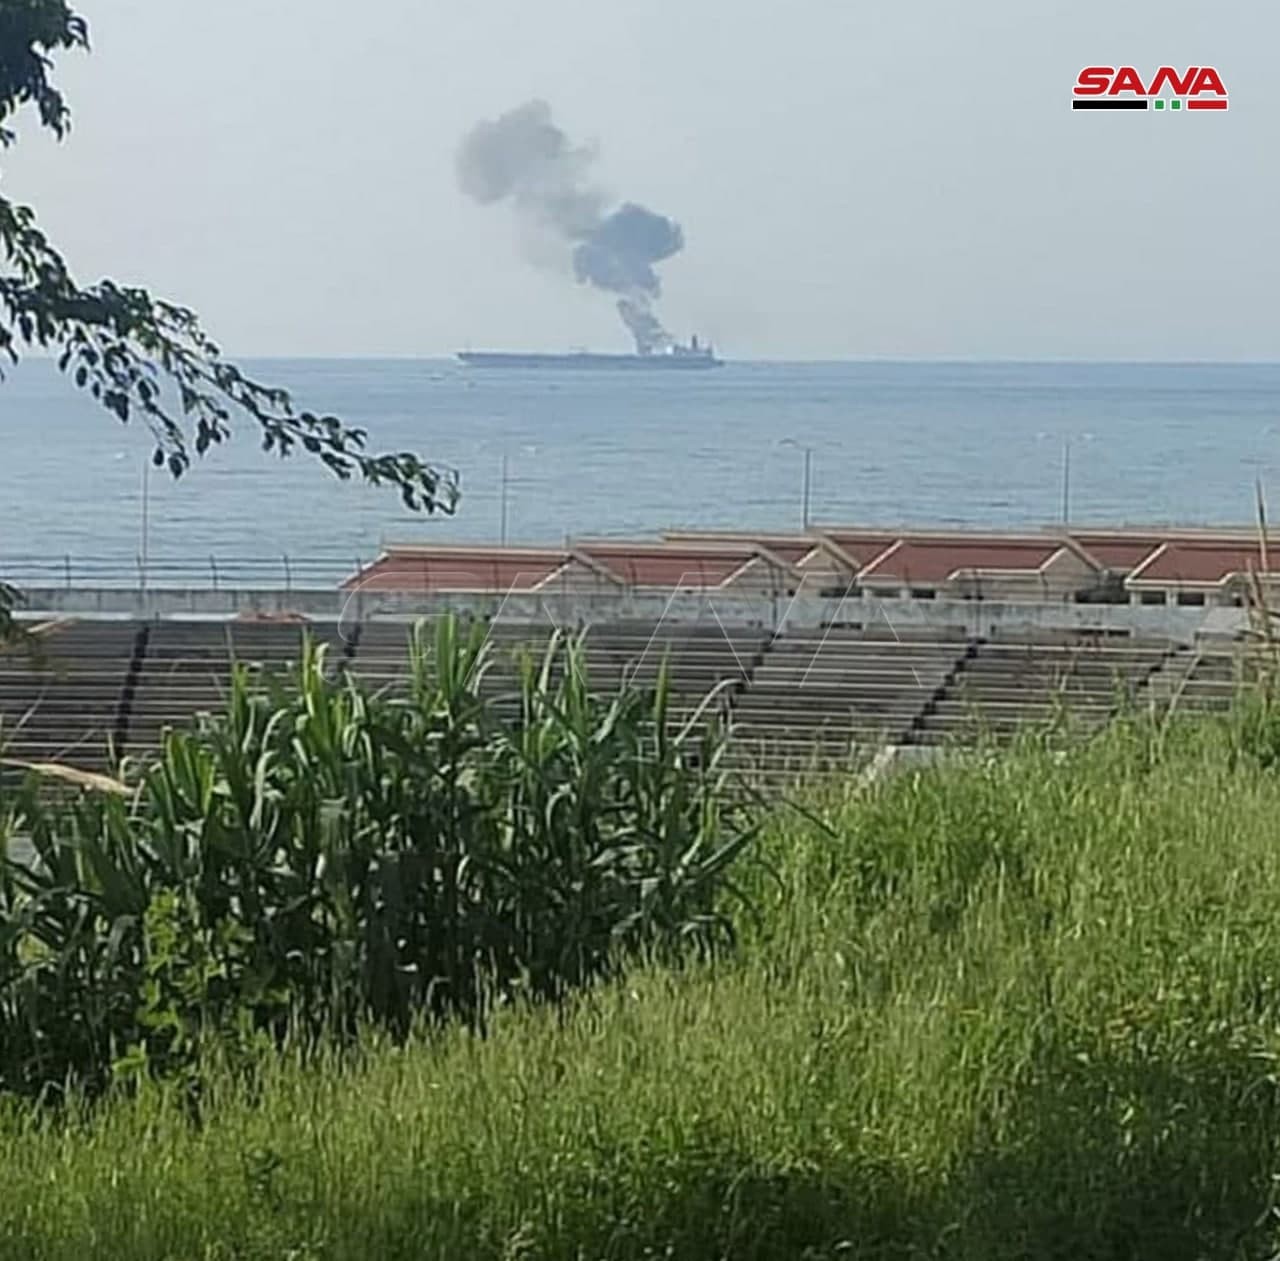 اندلاع حريق في أحد خزانات ناقلة نفط إيرانية قبالة سواحل بانياس السورية بعد تعرضها لهجوم بطائرة مسيرة